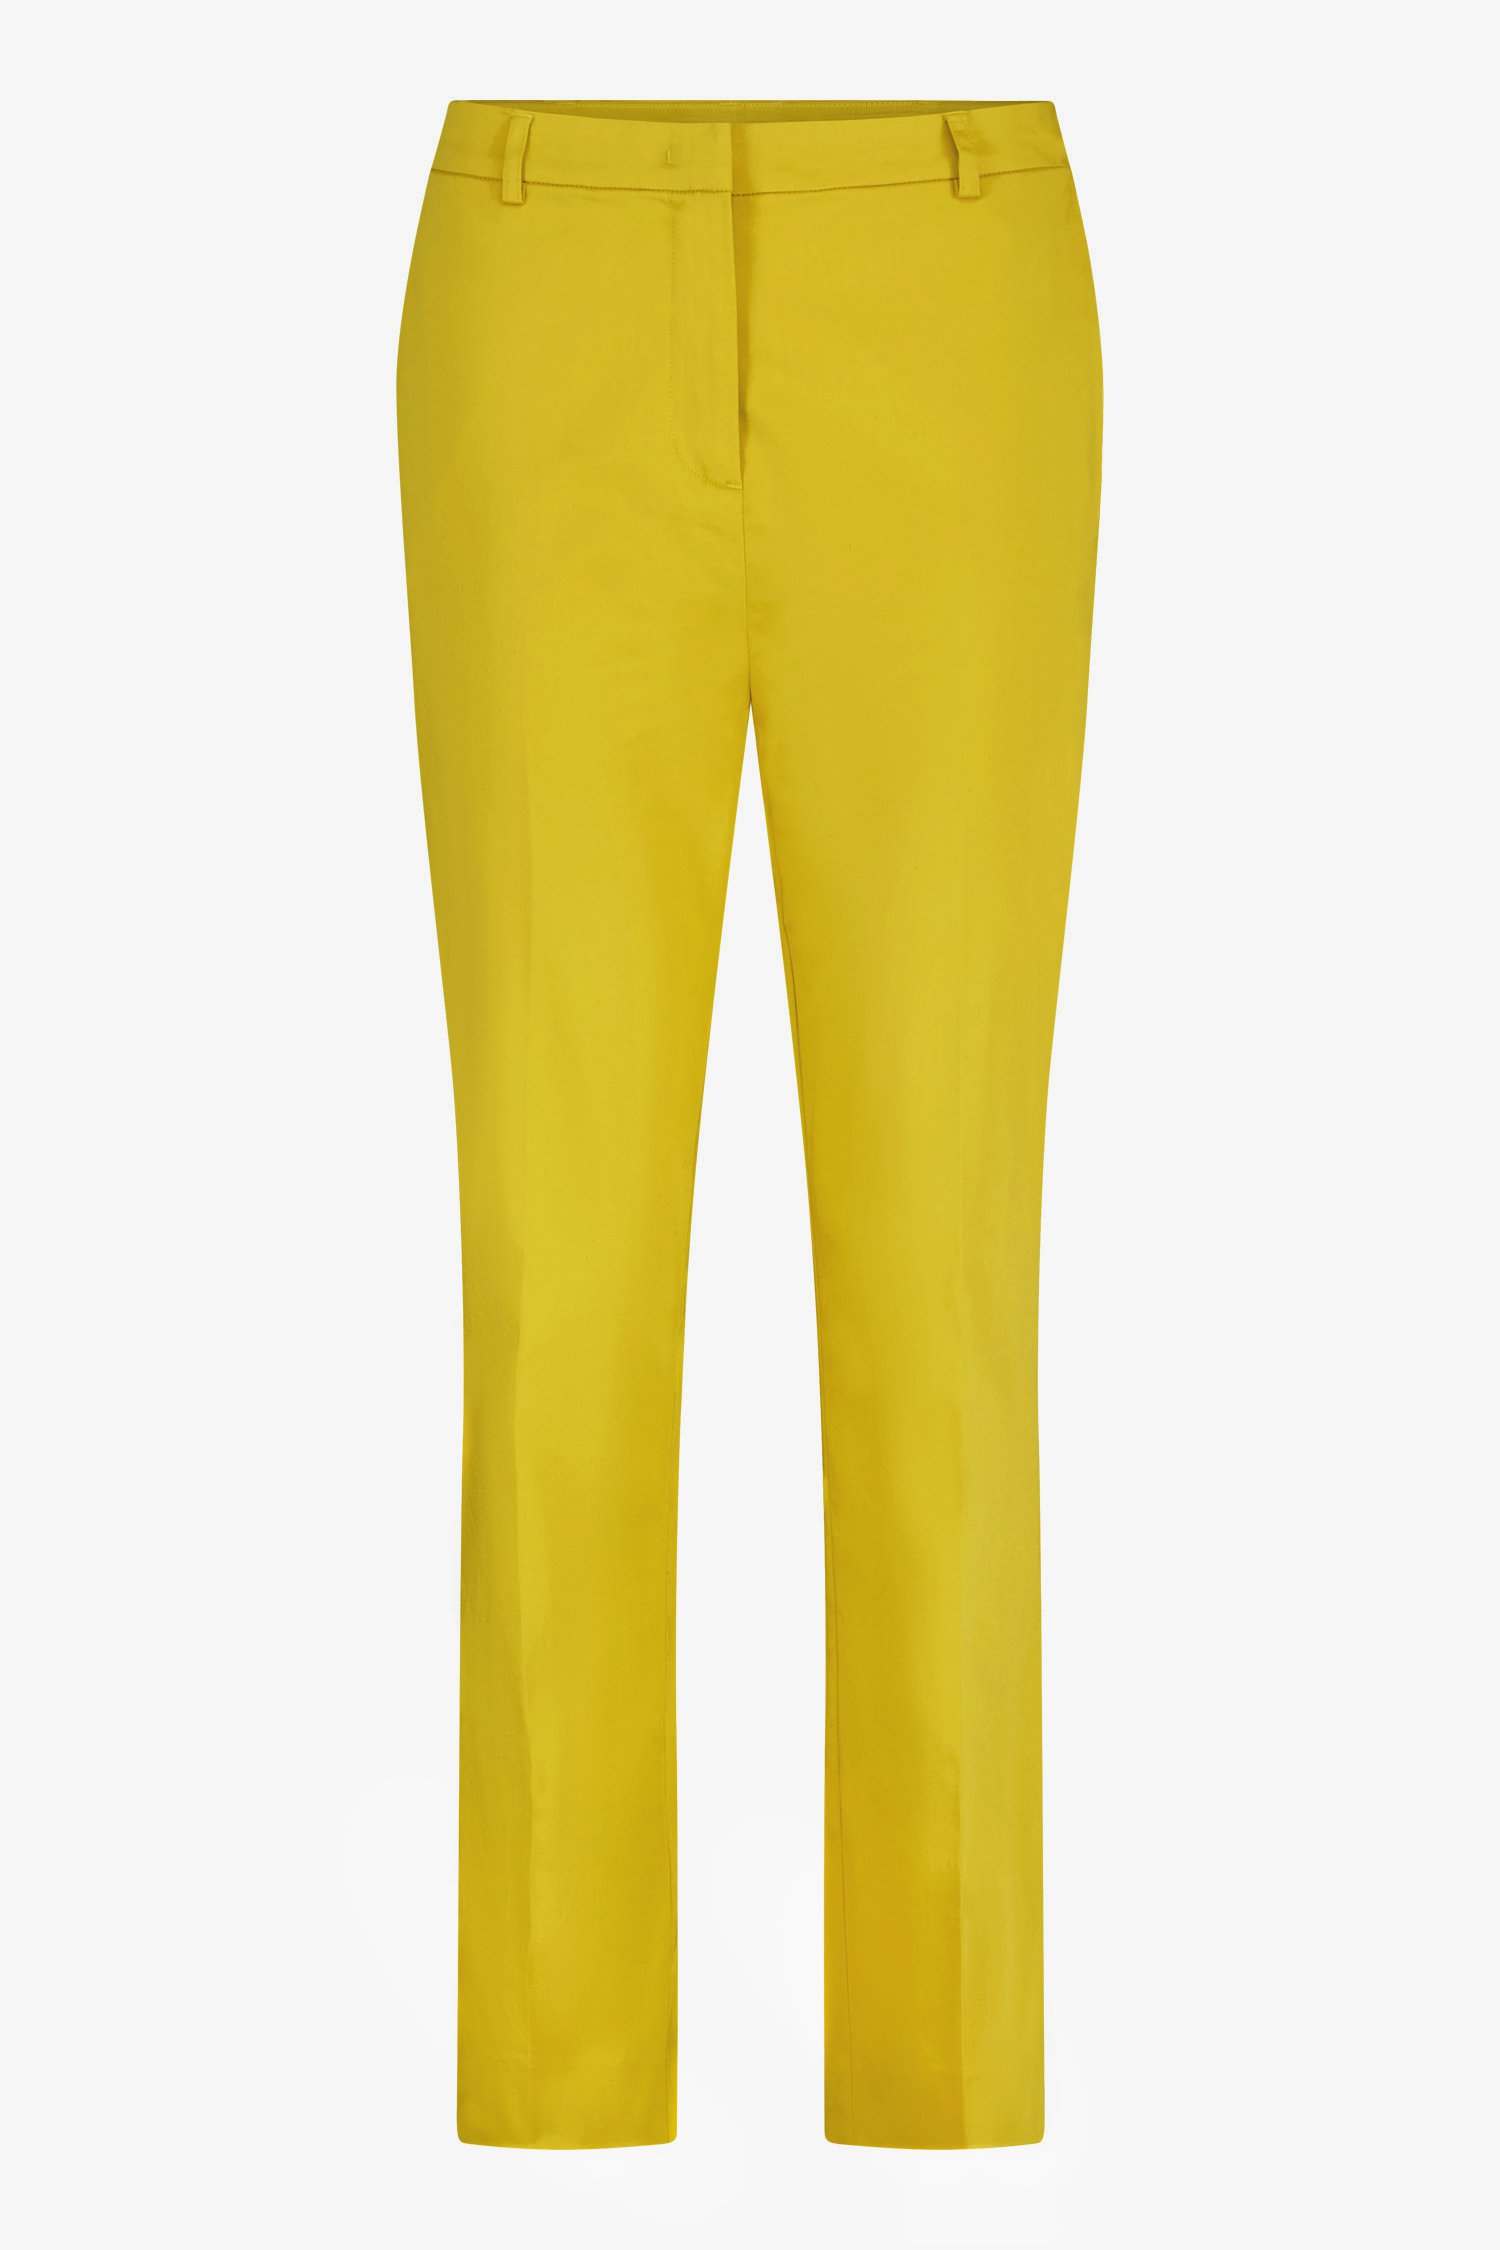 Pantalon habillé jaune  de D'Auvry pour Femmes